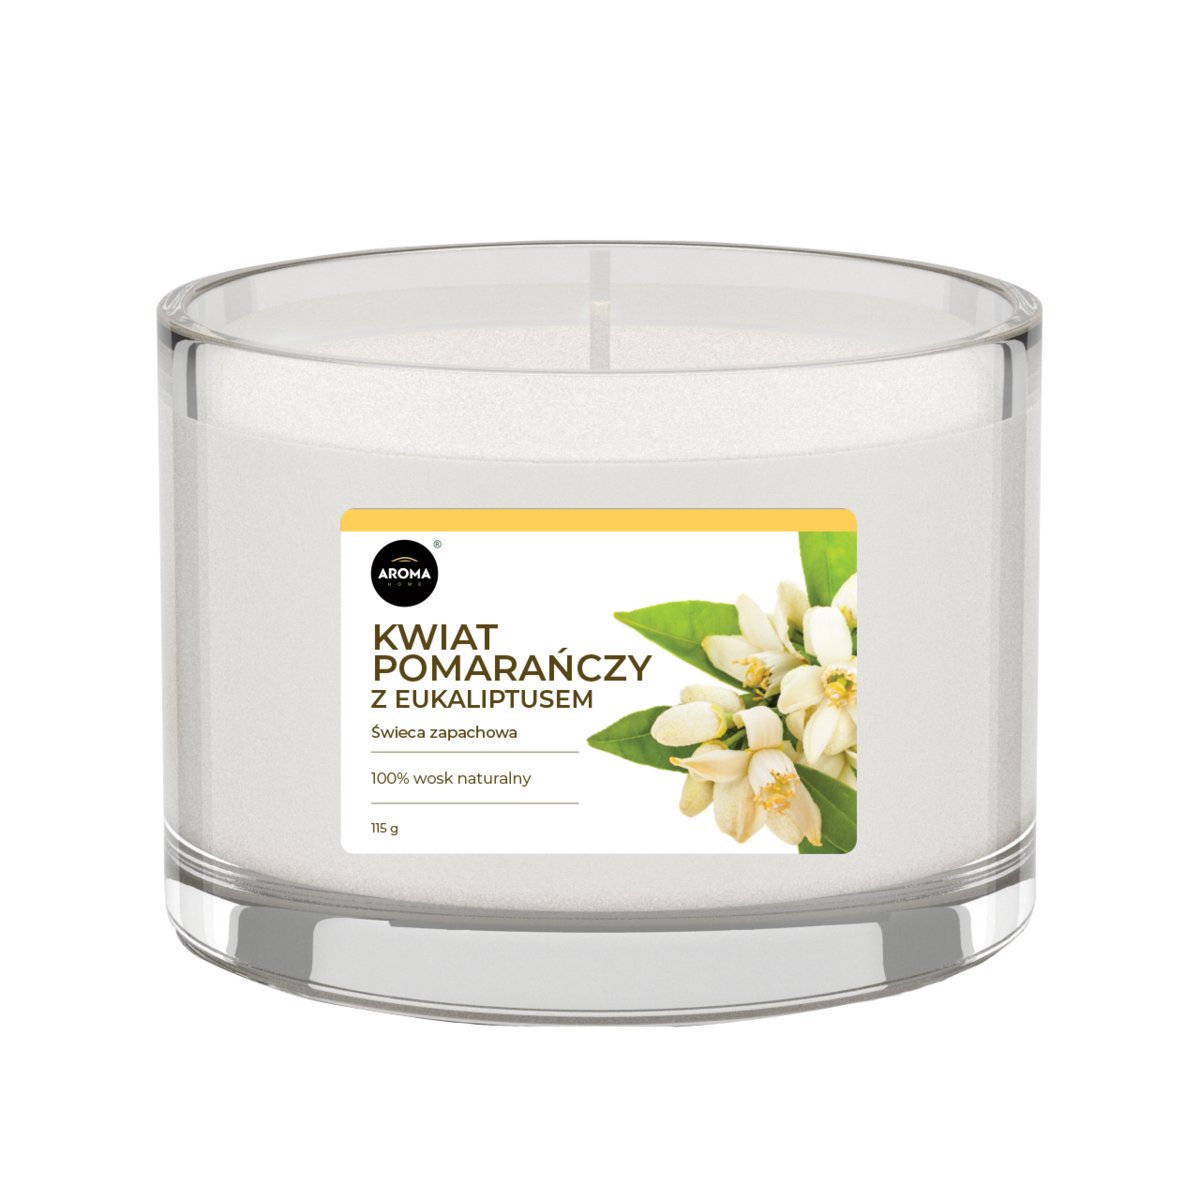 Aroma Home Basic, świeca zapachowa, Kwiat pomarańczy z eukaliptusem, 115 g